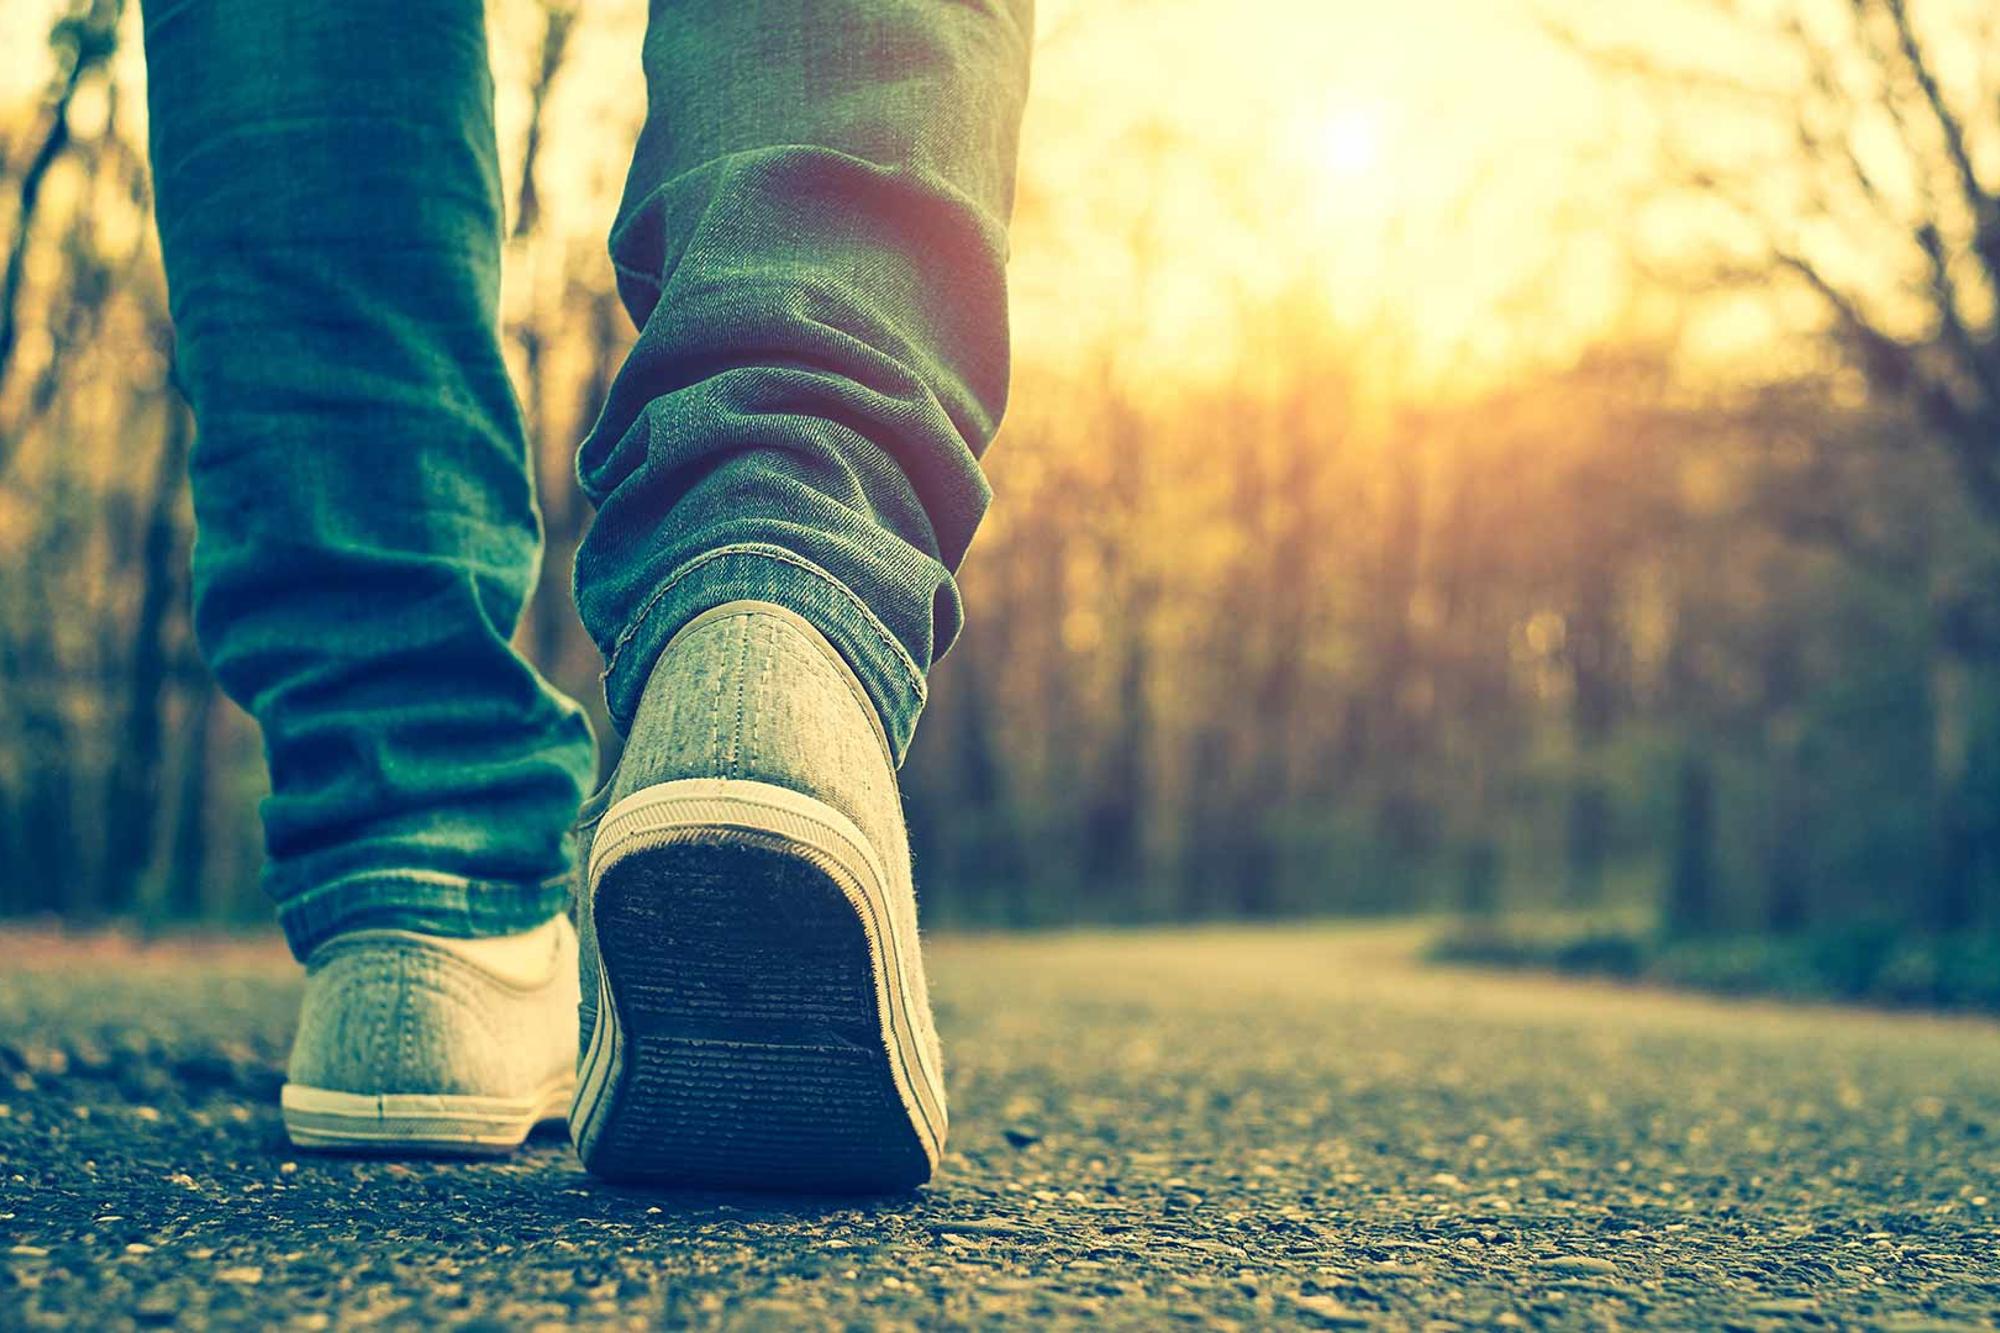 Fokus på skorna på en person som går på en väg med en solnedgång i bakgrunden.